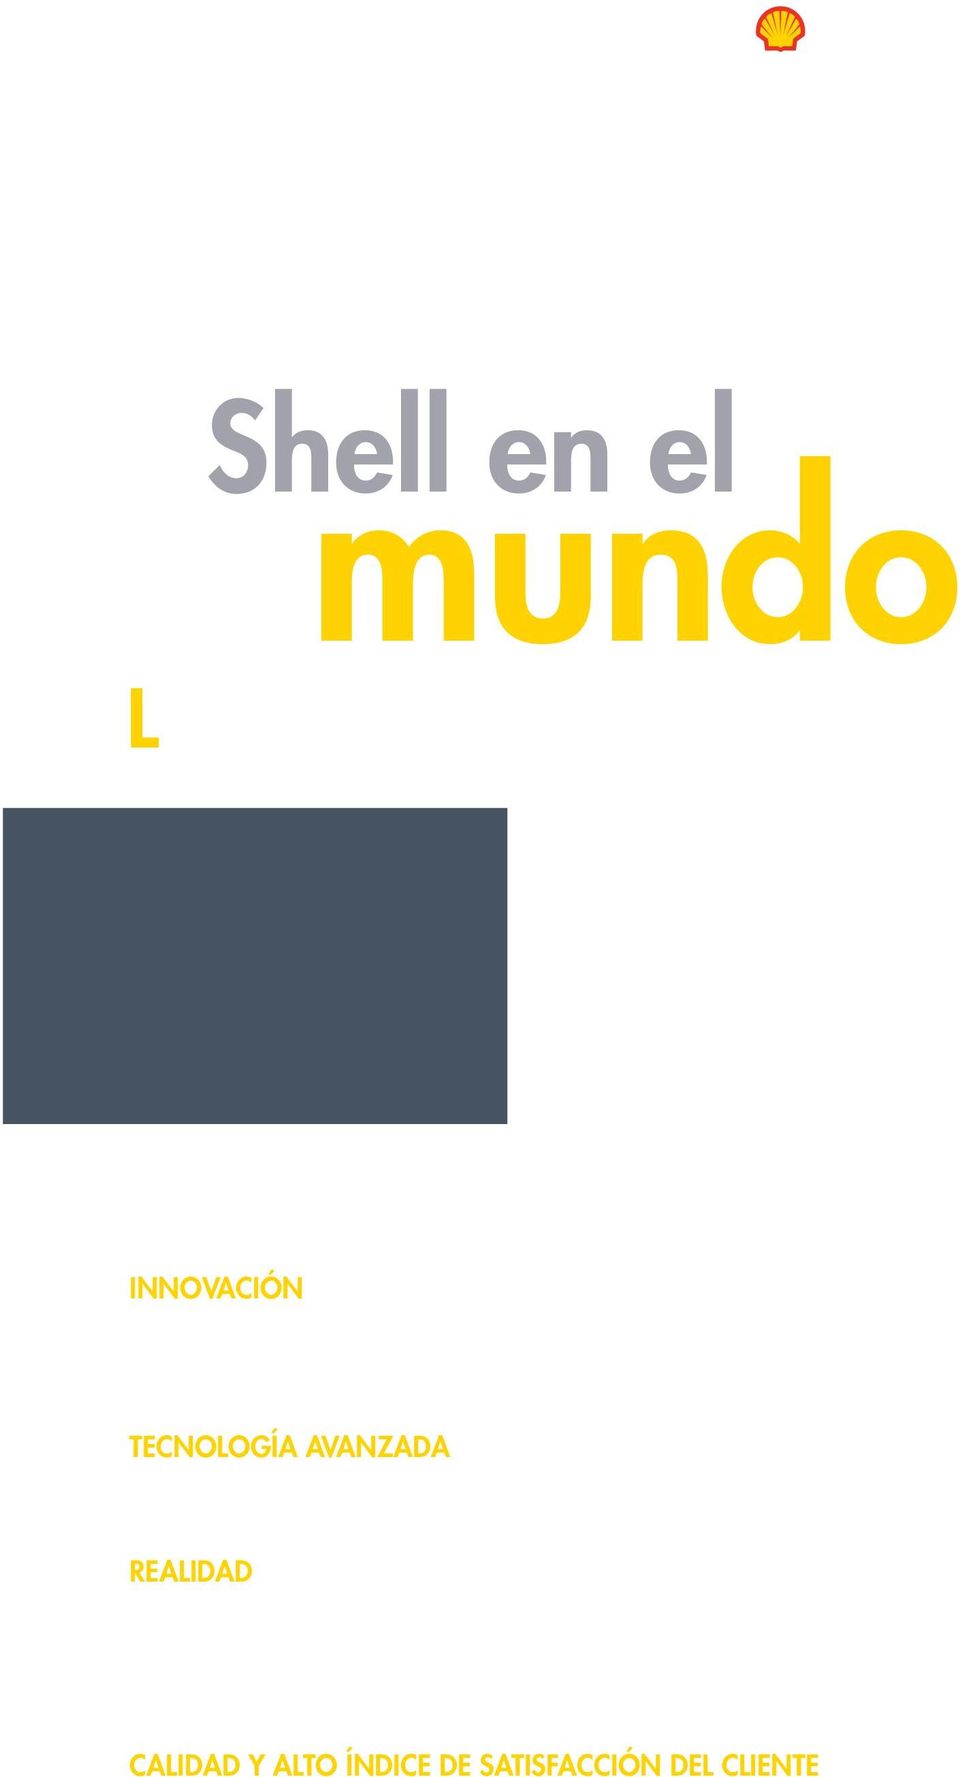 Shell invierte anualmente en I+D más de 700 millones de dólares al año y dispone de una división propia de investigación con más de 4.500 expertos en todo el mundo: Shell Global Solutions.